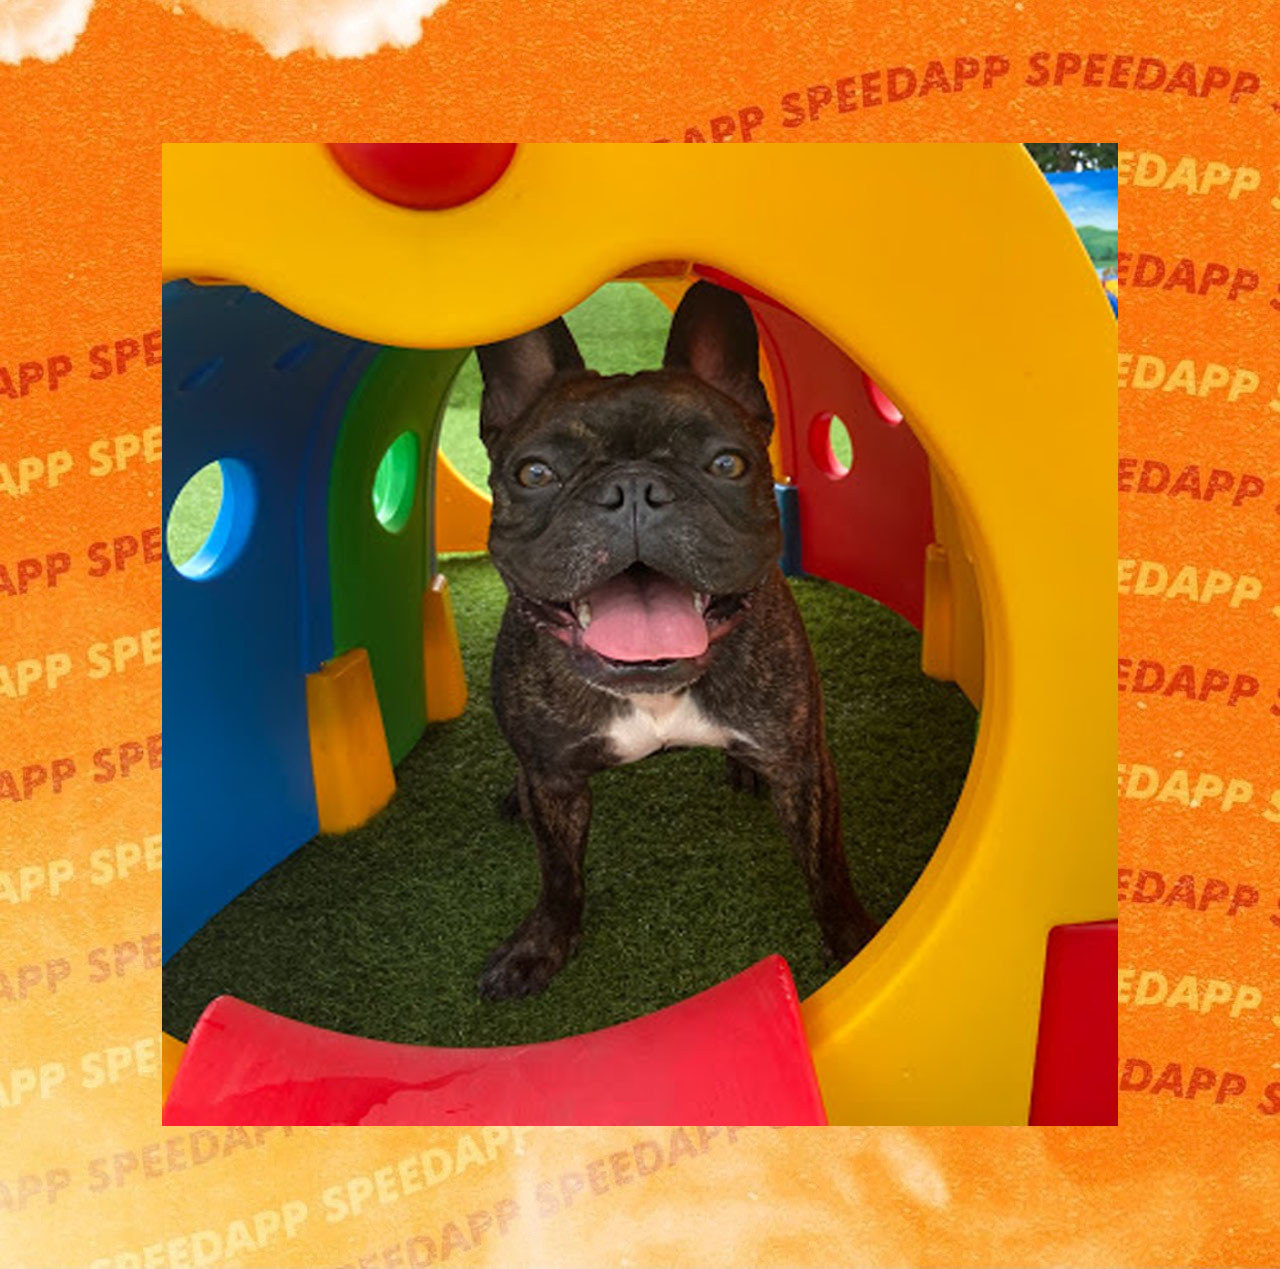 Conheça o Barney, o bulldog que faz parte do time SpeedApp